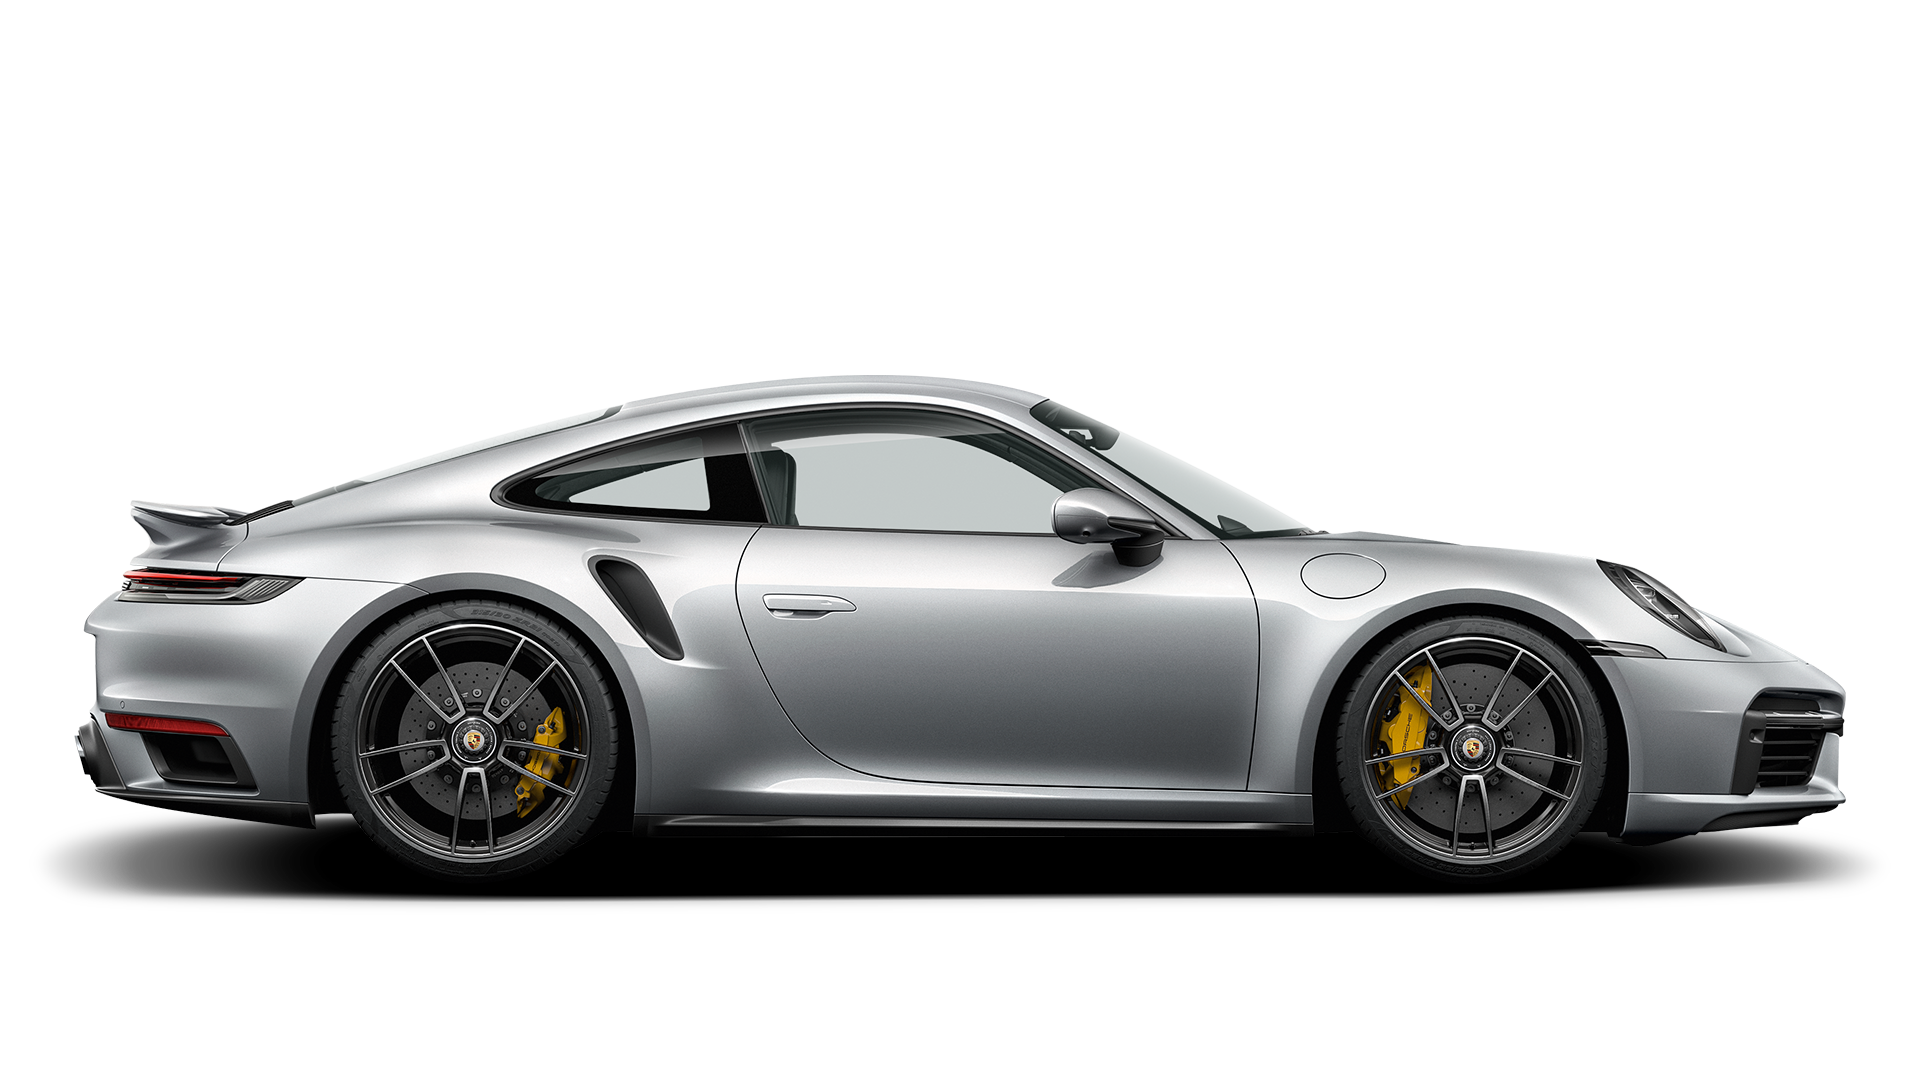 Porsche 911 Turbo S - Porsche USA